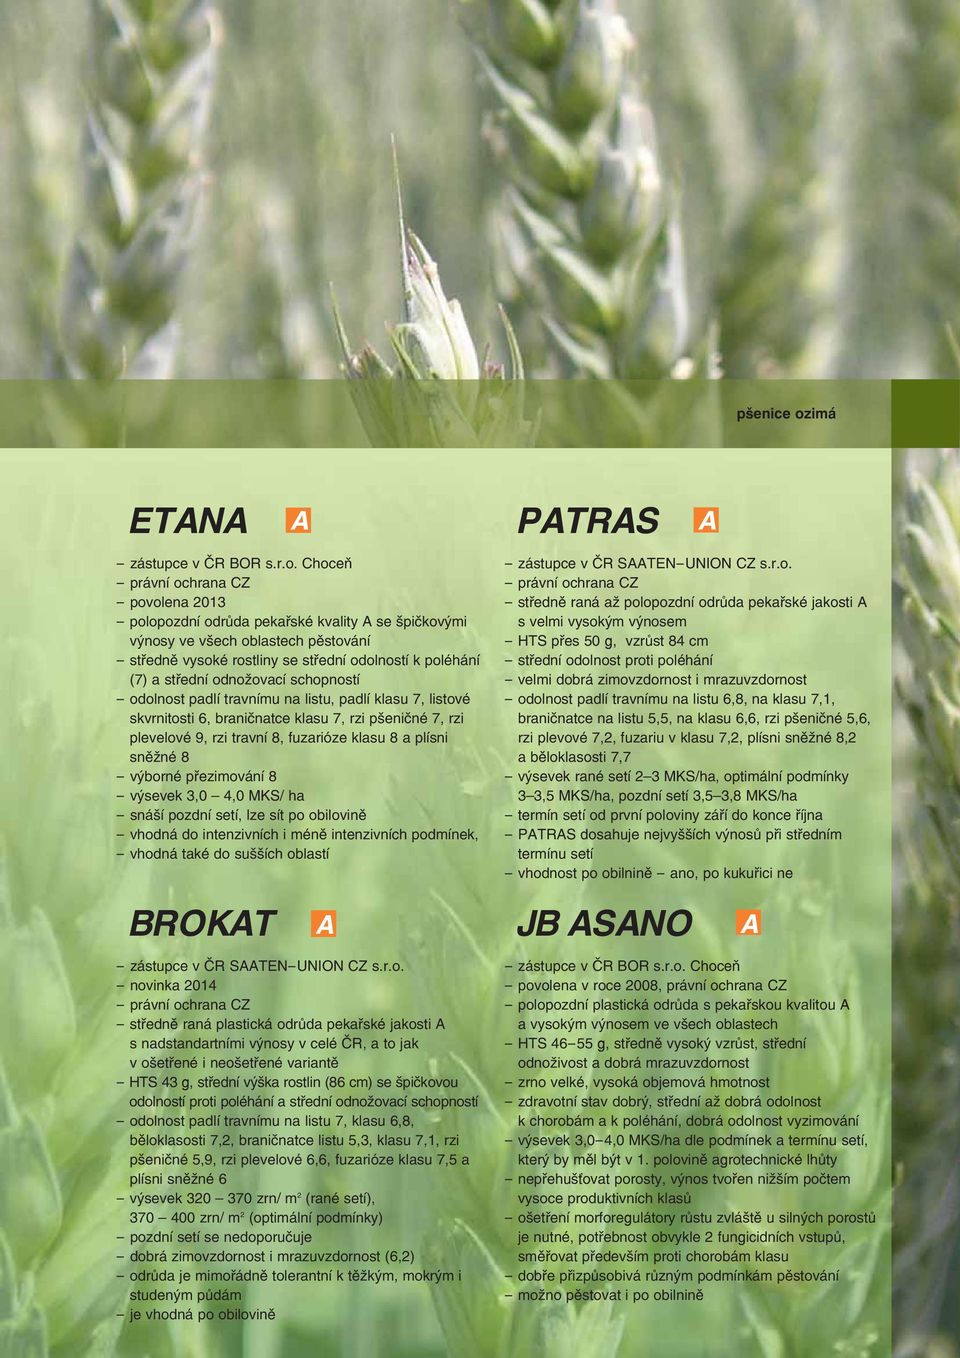 Choceň - povolena 2013 - polopozdní odrůda pekařské kvality se špičkovými výnosy ve všech oblastech pěstování - středně vysoké rostliny se střední odolností k poléhání (7) a střední odnožovací